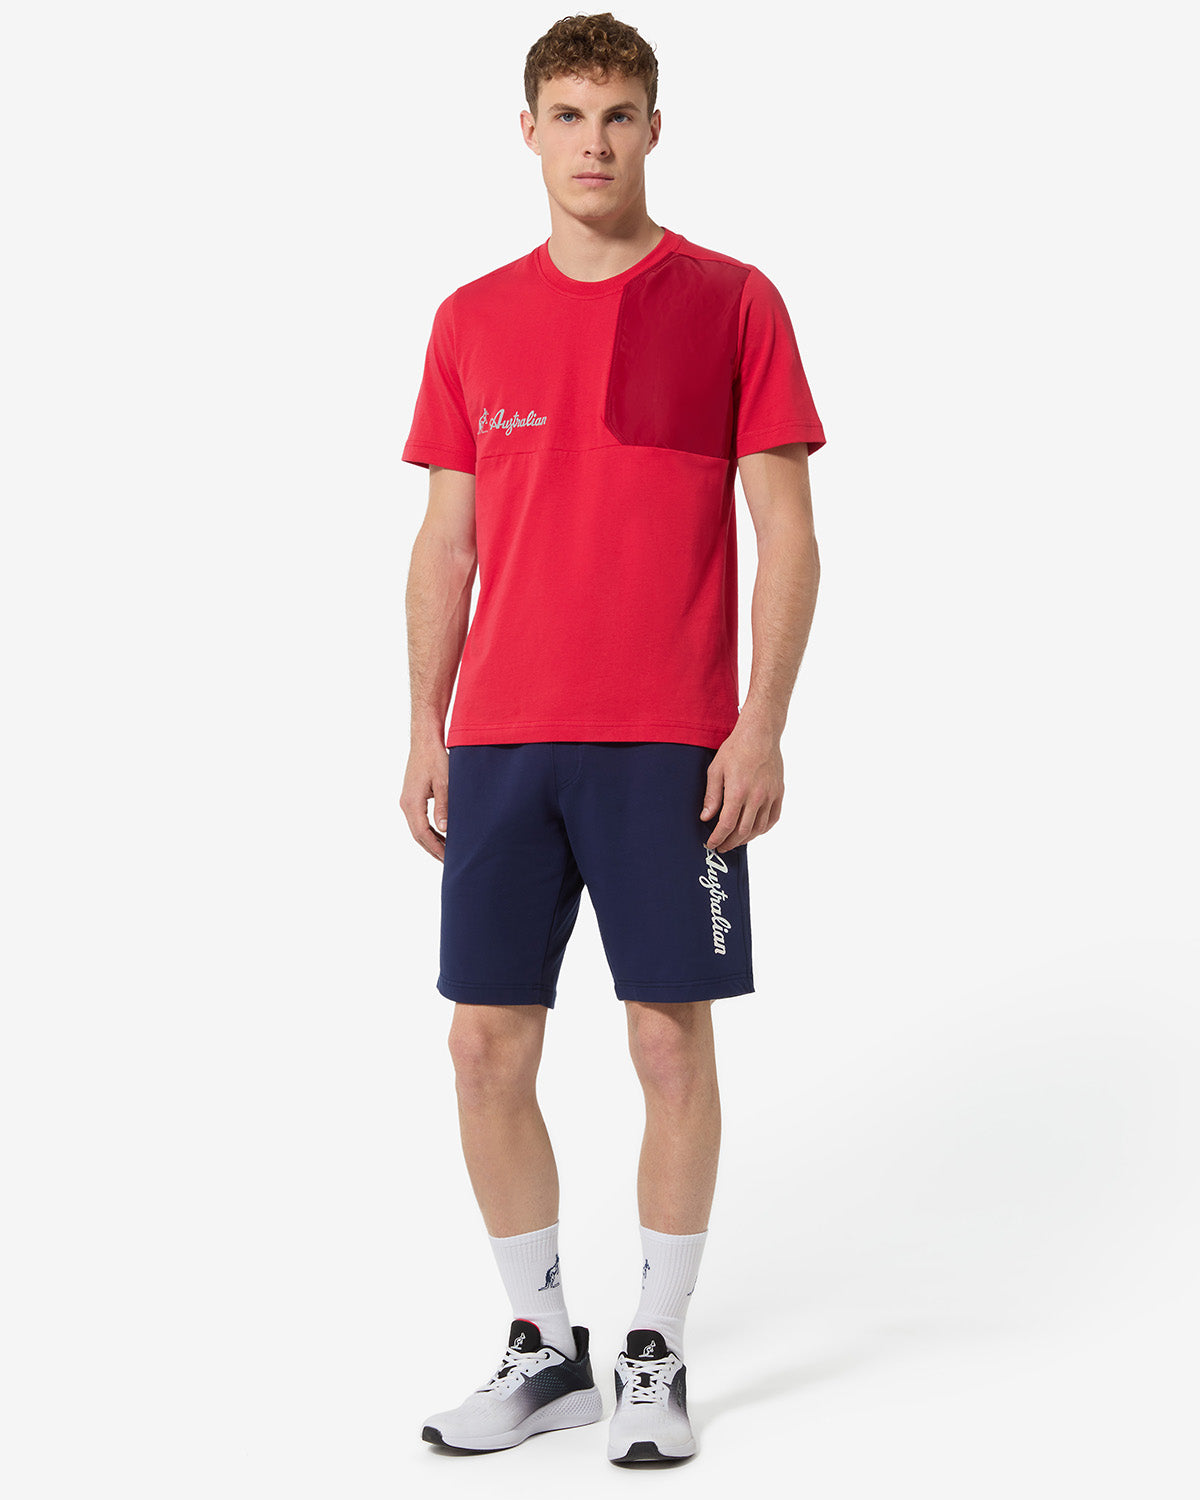 Urban Short: Australian Sportswear